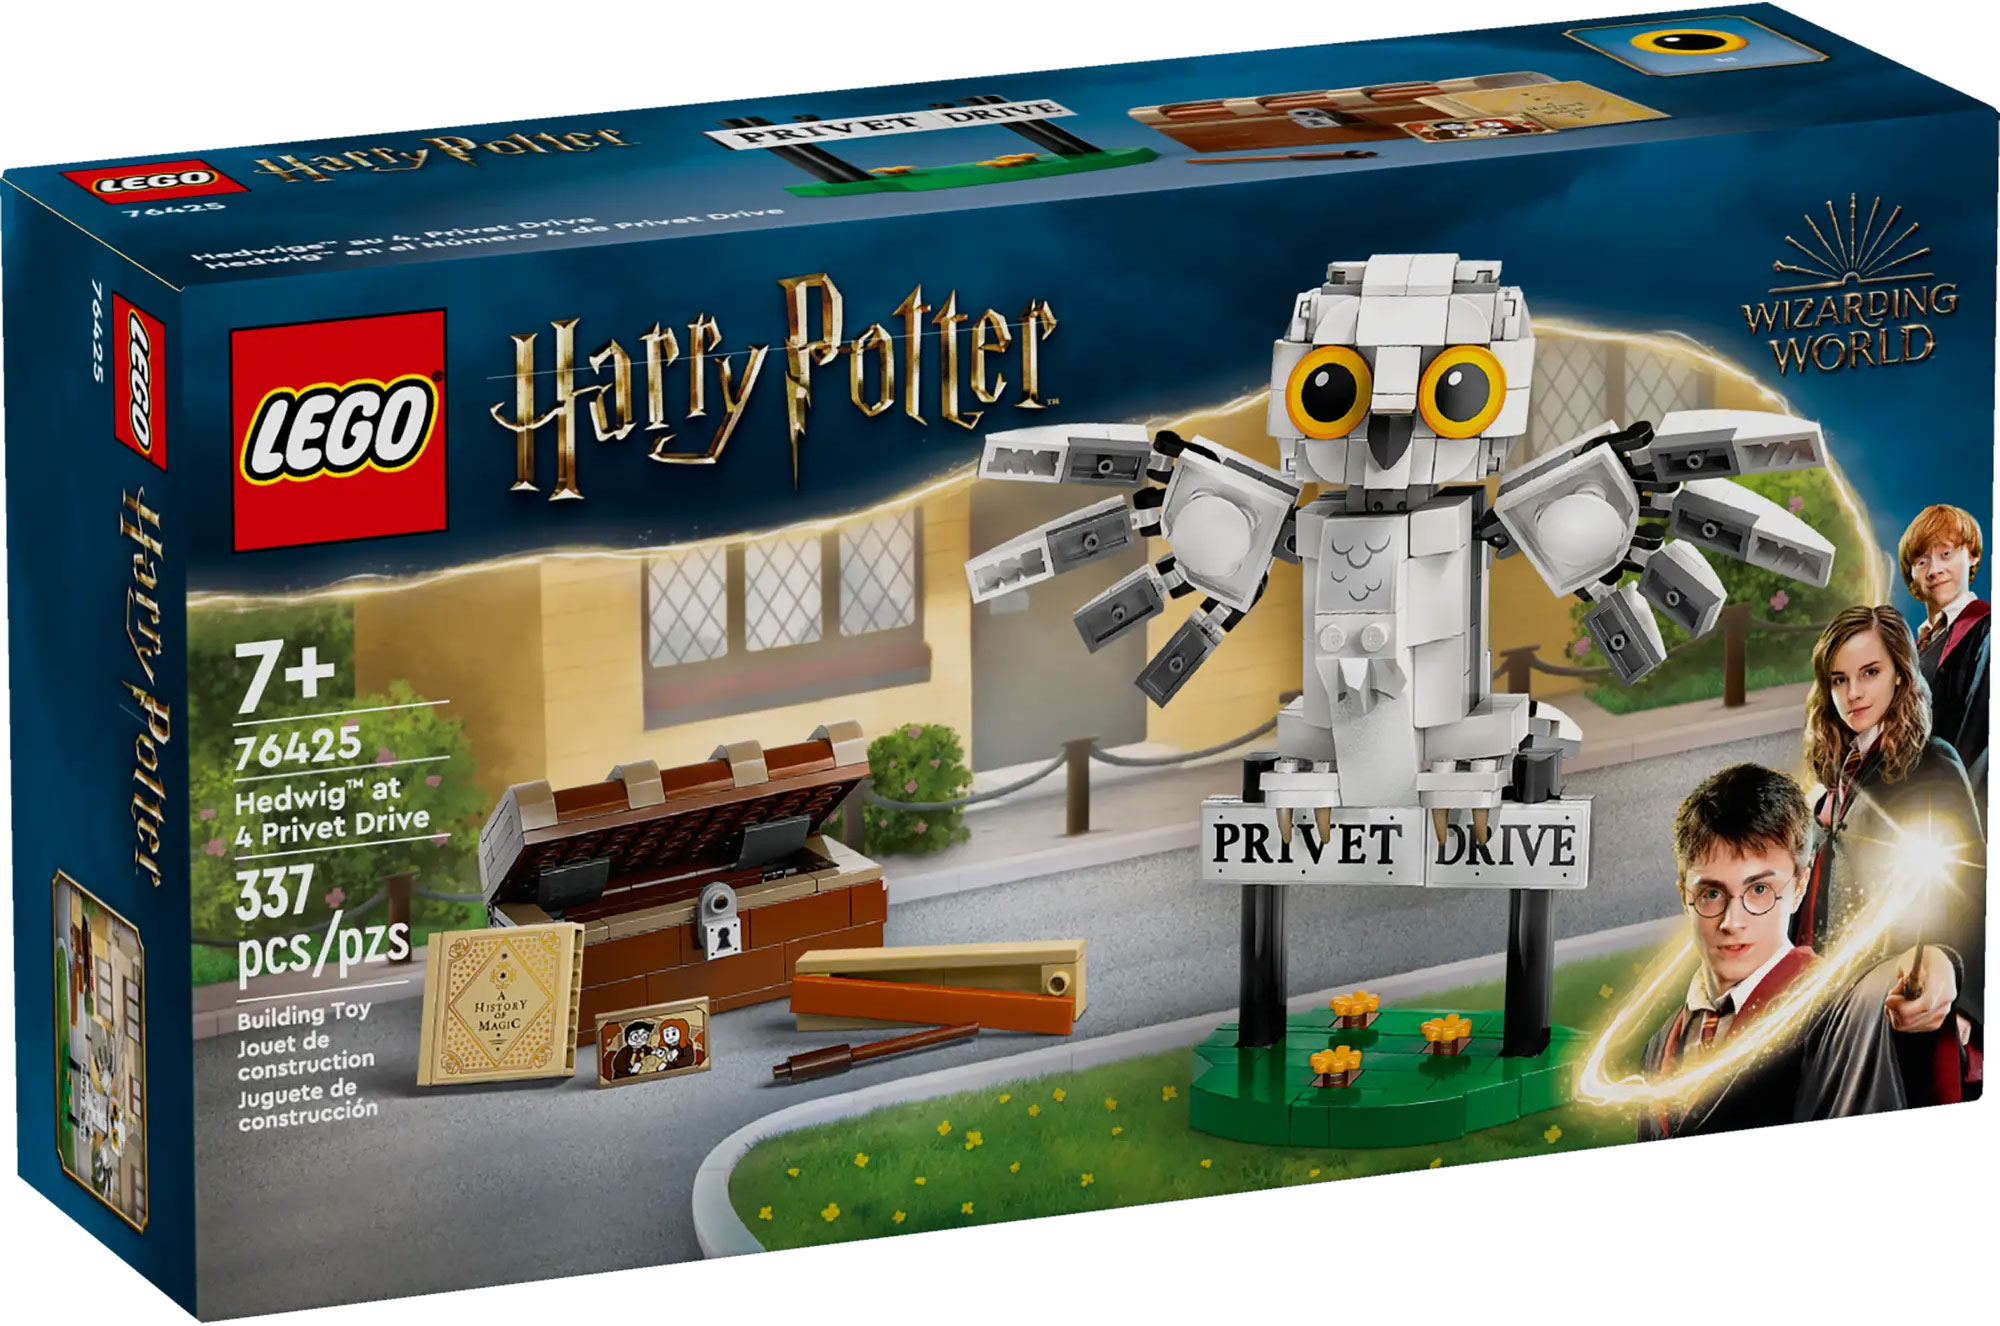 LEGO Harry Potter 76425 pas cher, Hedwige au 4 Privet Drive